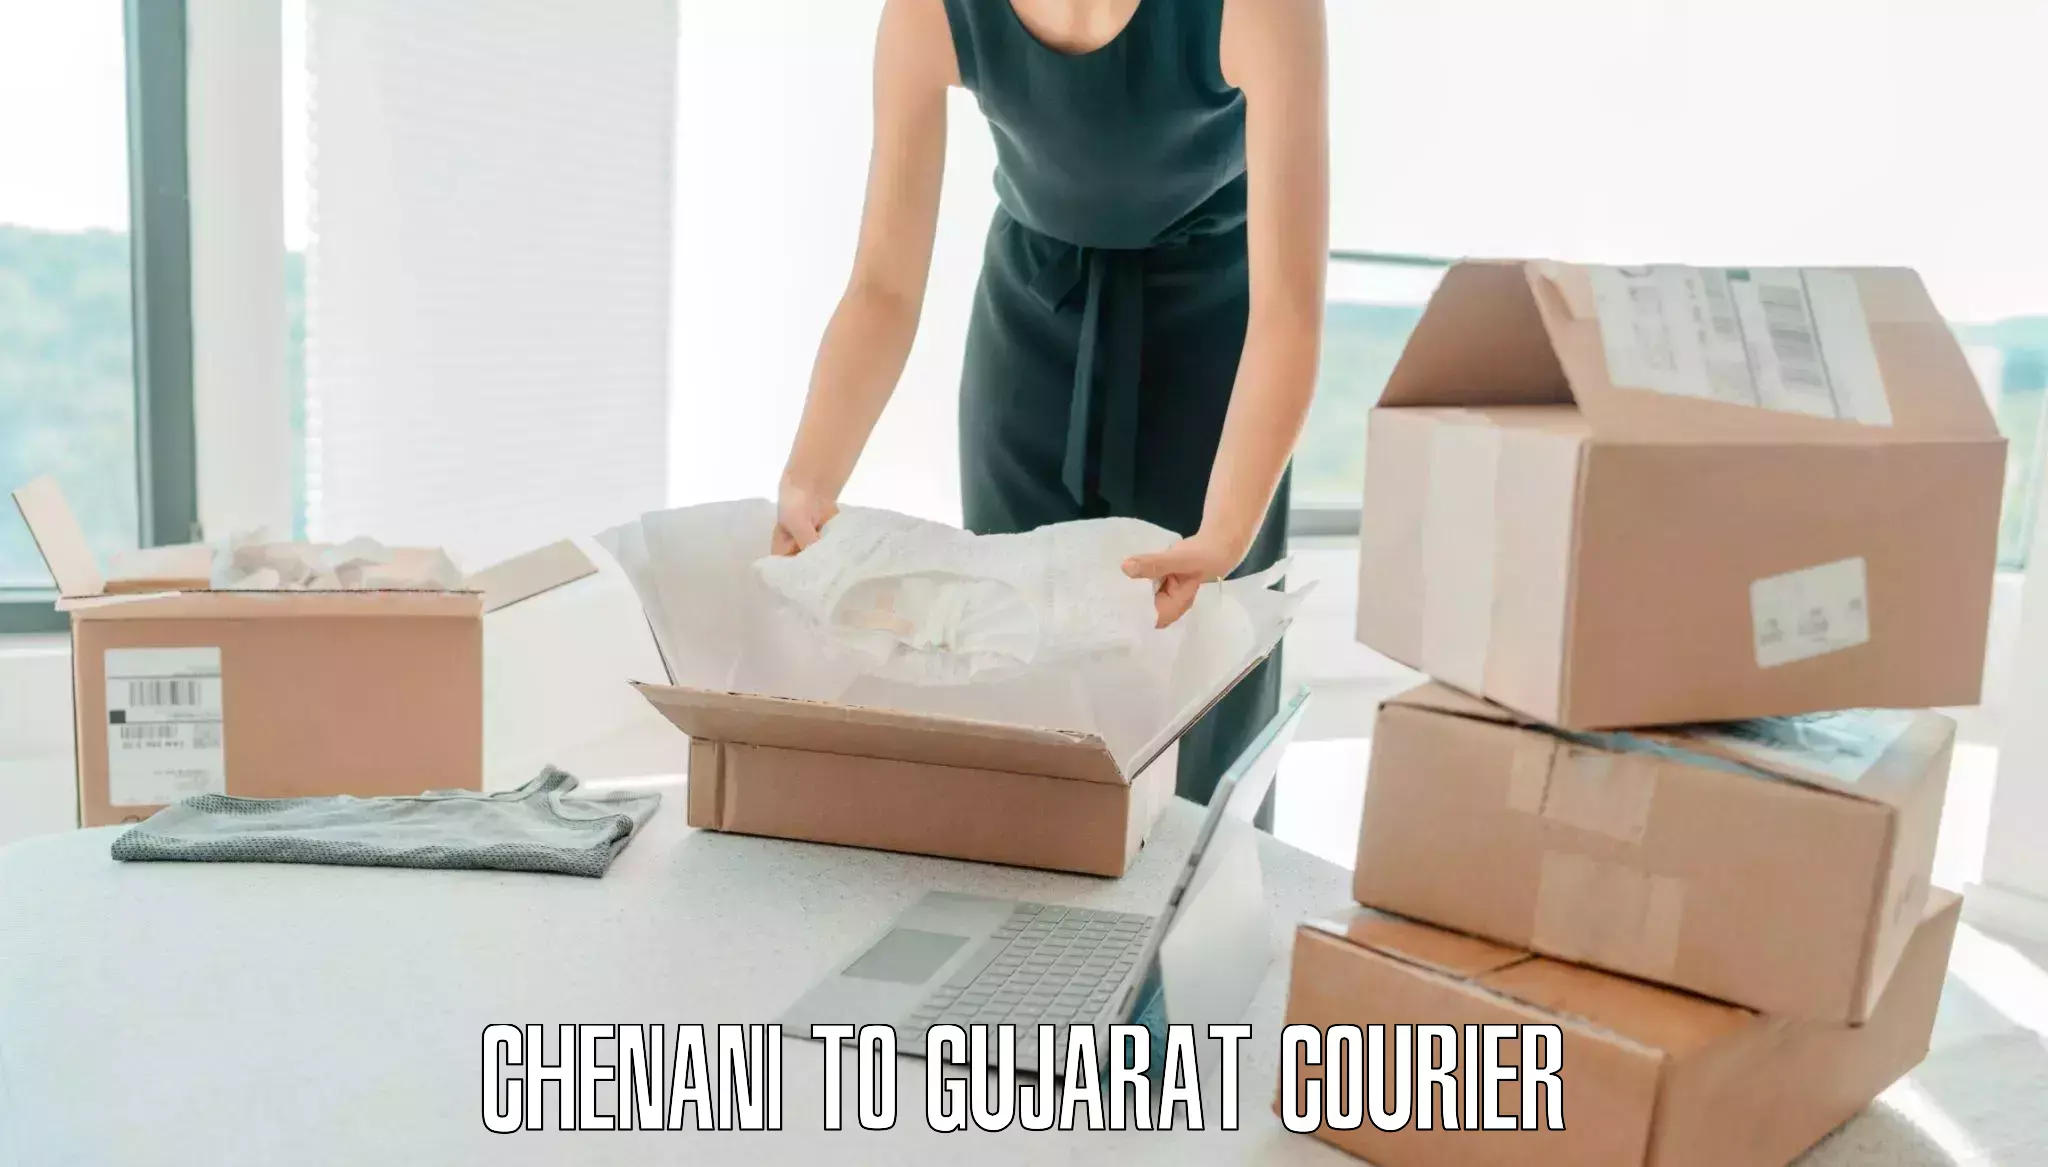 Doorstep luggage pickup Chenani to Gujarat